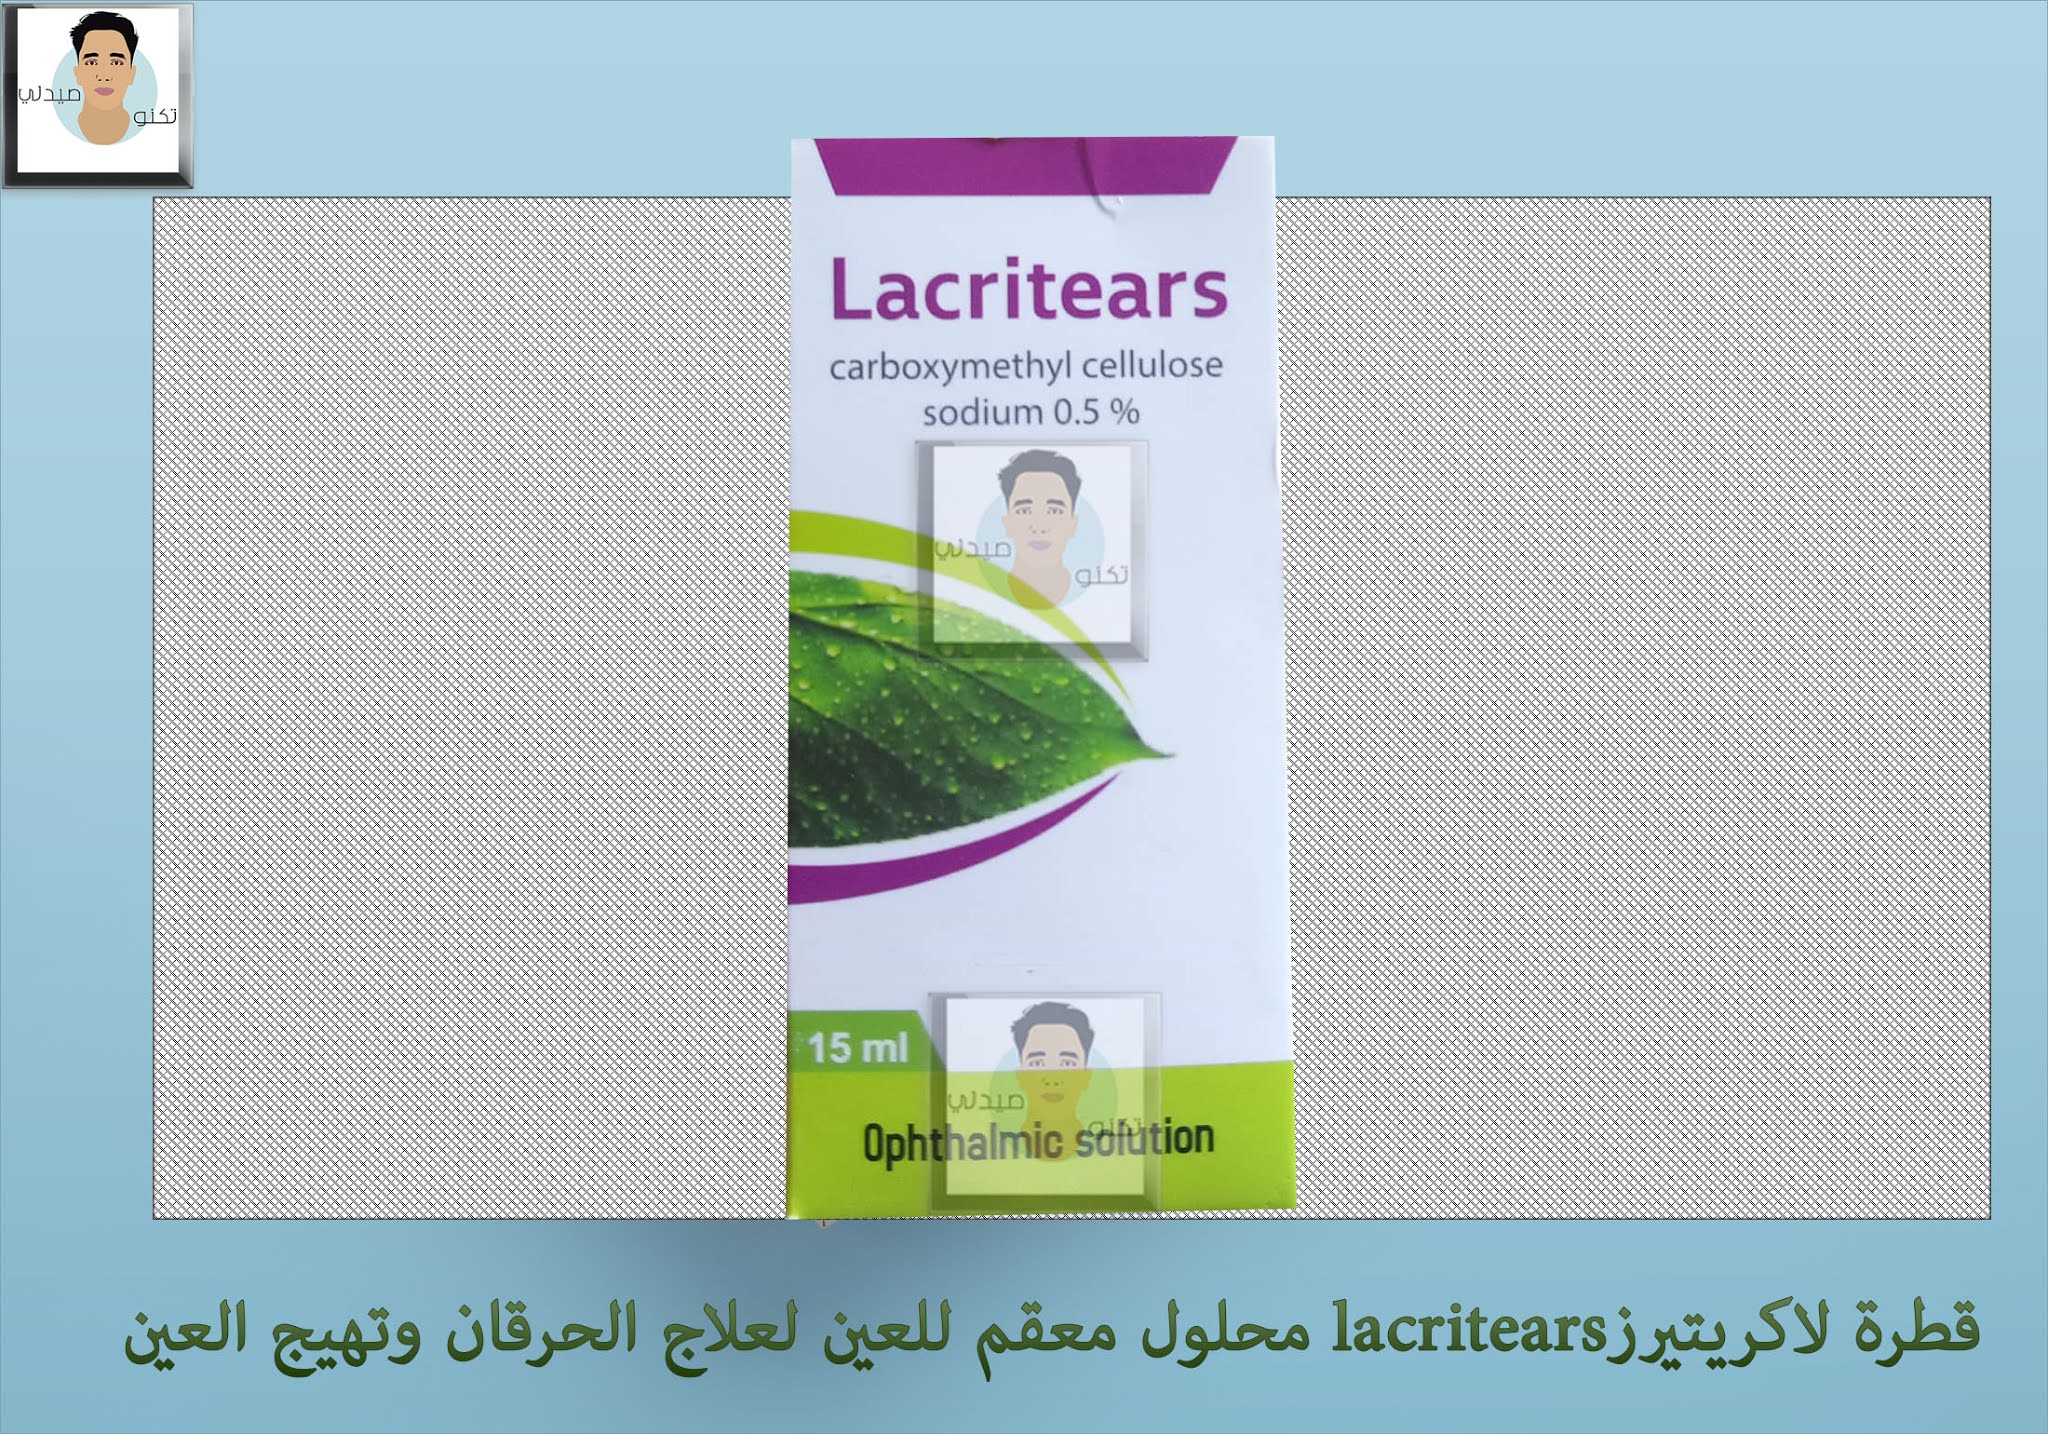 قطرة لاكريتيرزlacritears محلول معقم للعين لعلاج الحرقان وتهيج العين